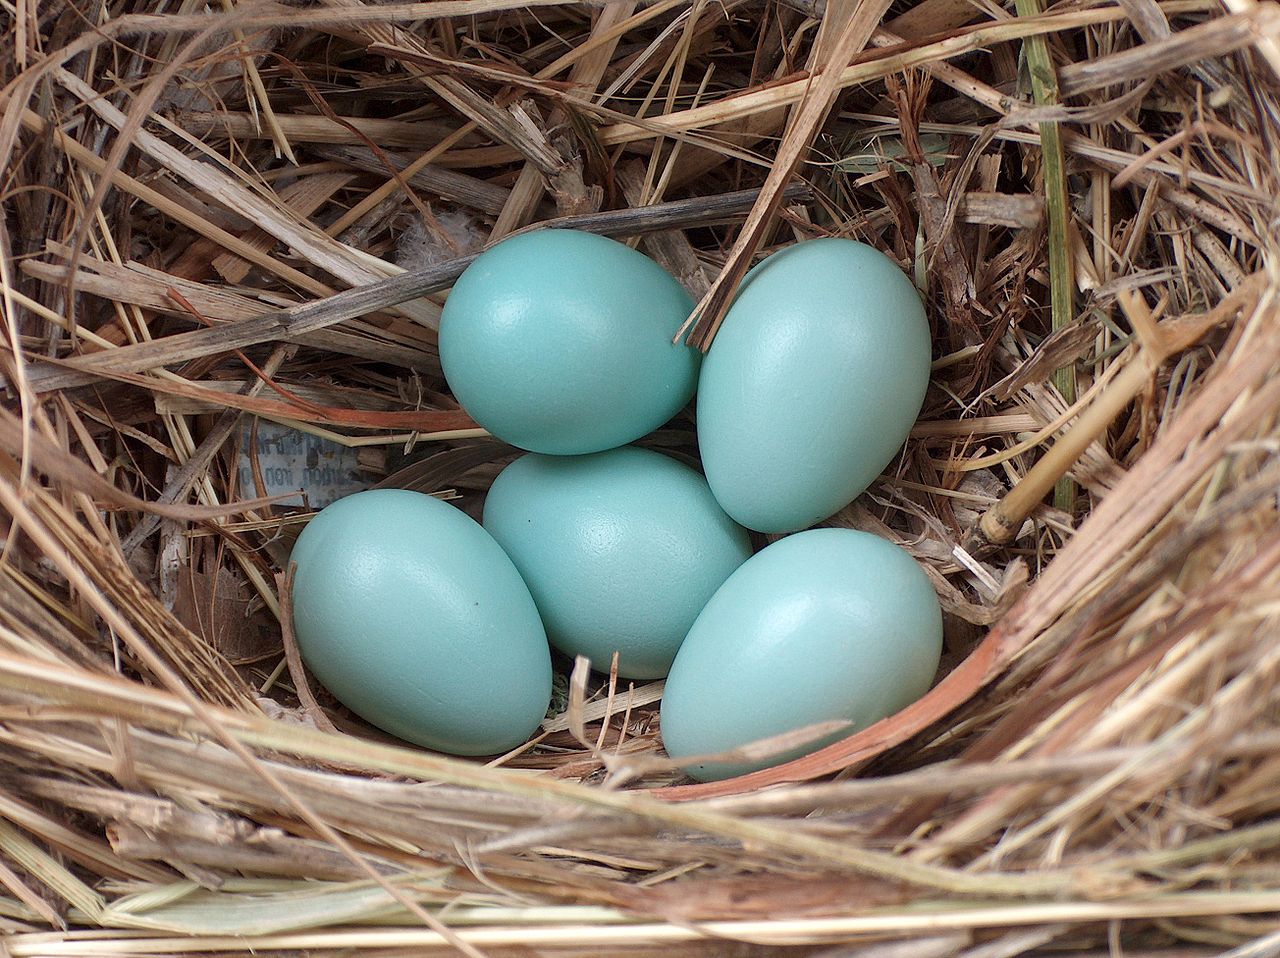 Starling eggs. Umiestnenie spoločných vajcov